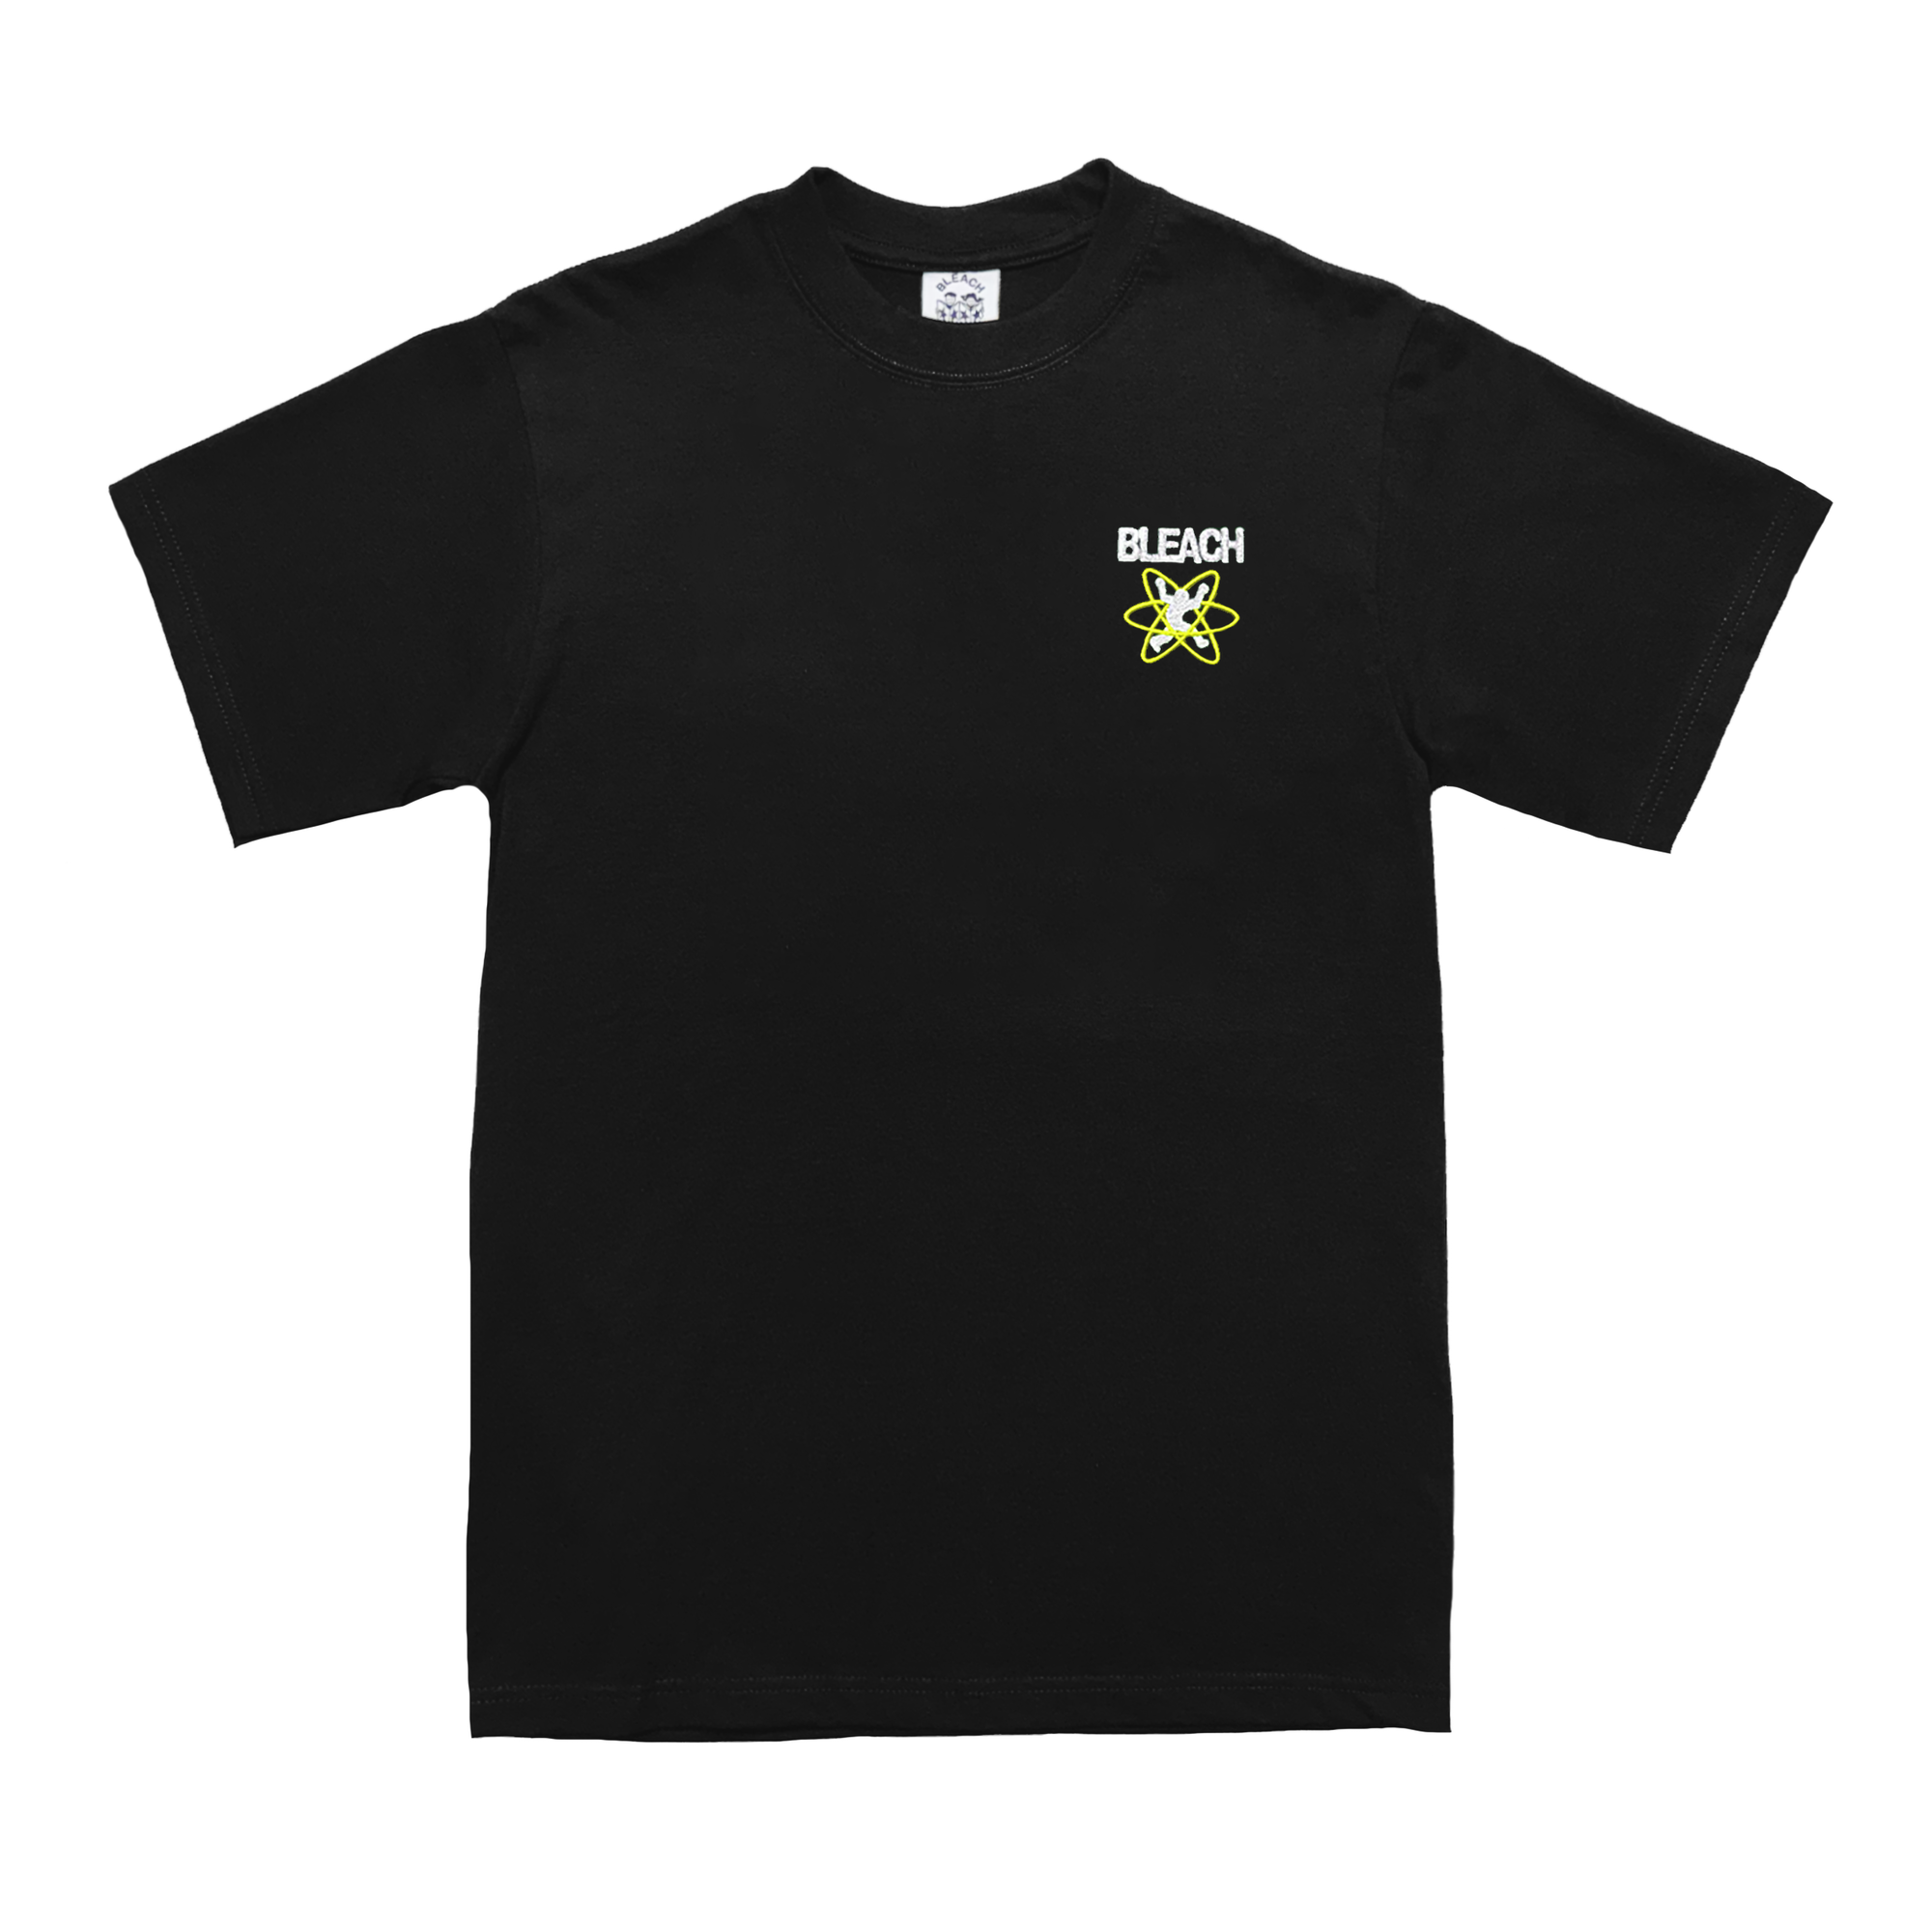 Bleach Atomic Shirt - Black